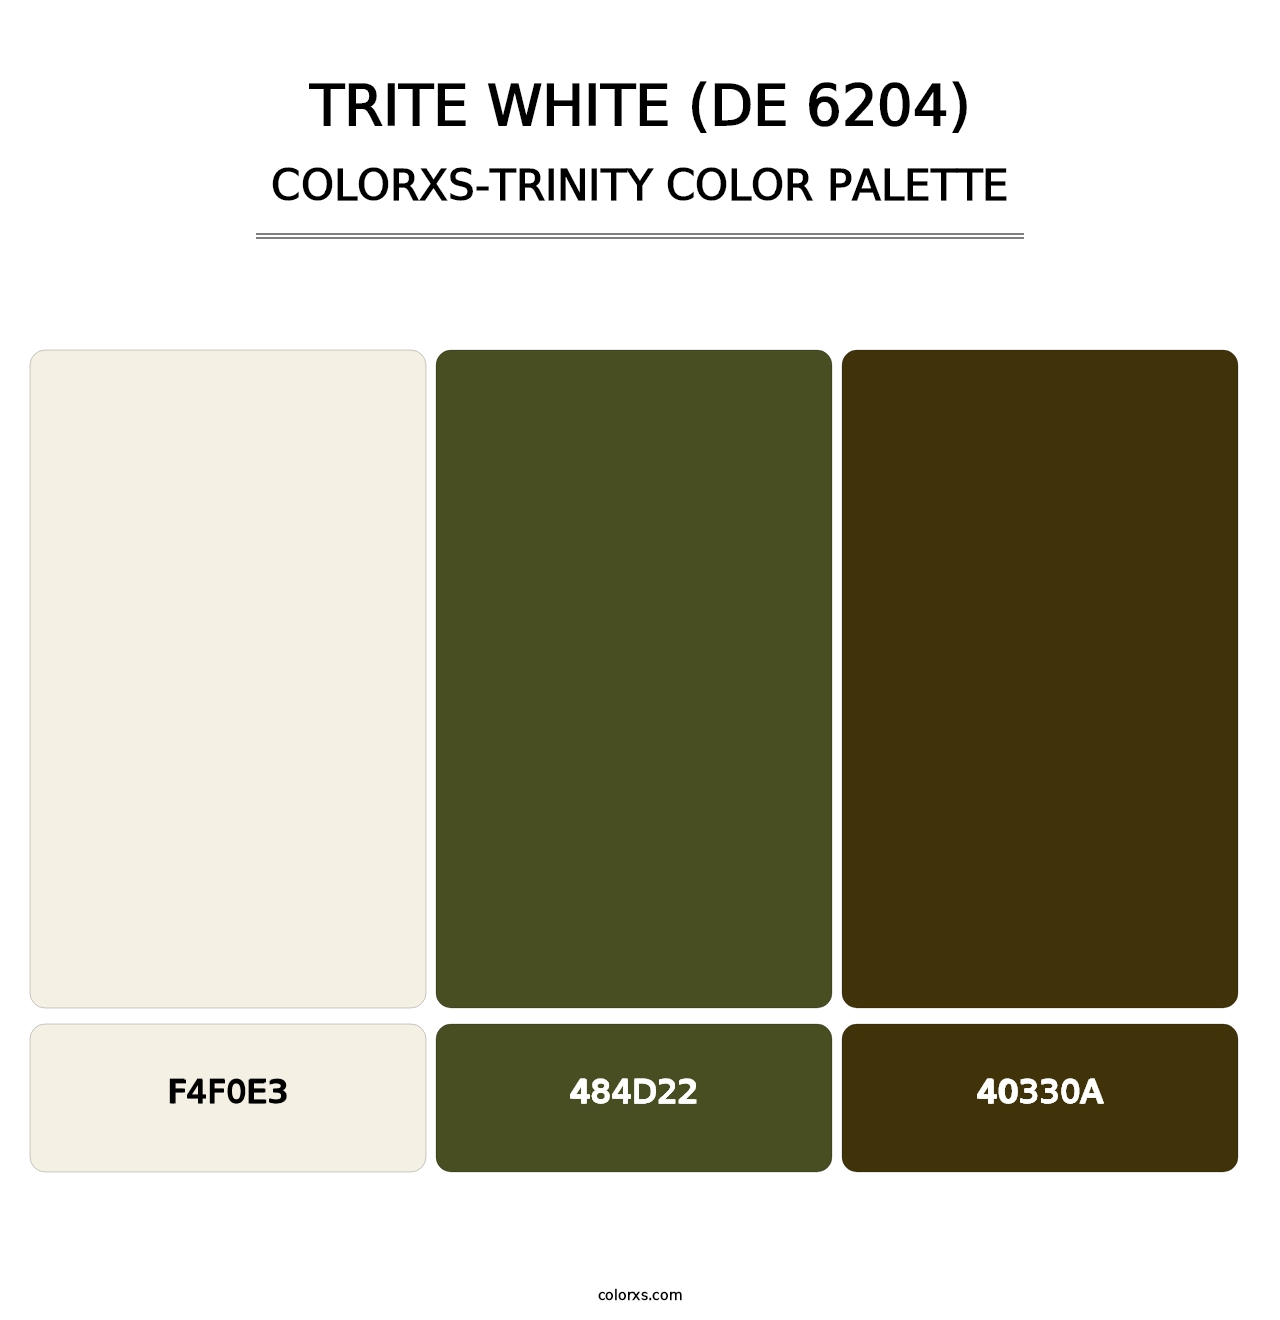 Trite White (DE 6204) - Colorxs Trinity Palette